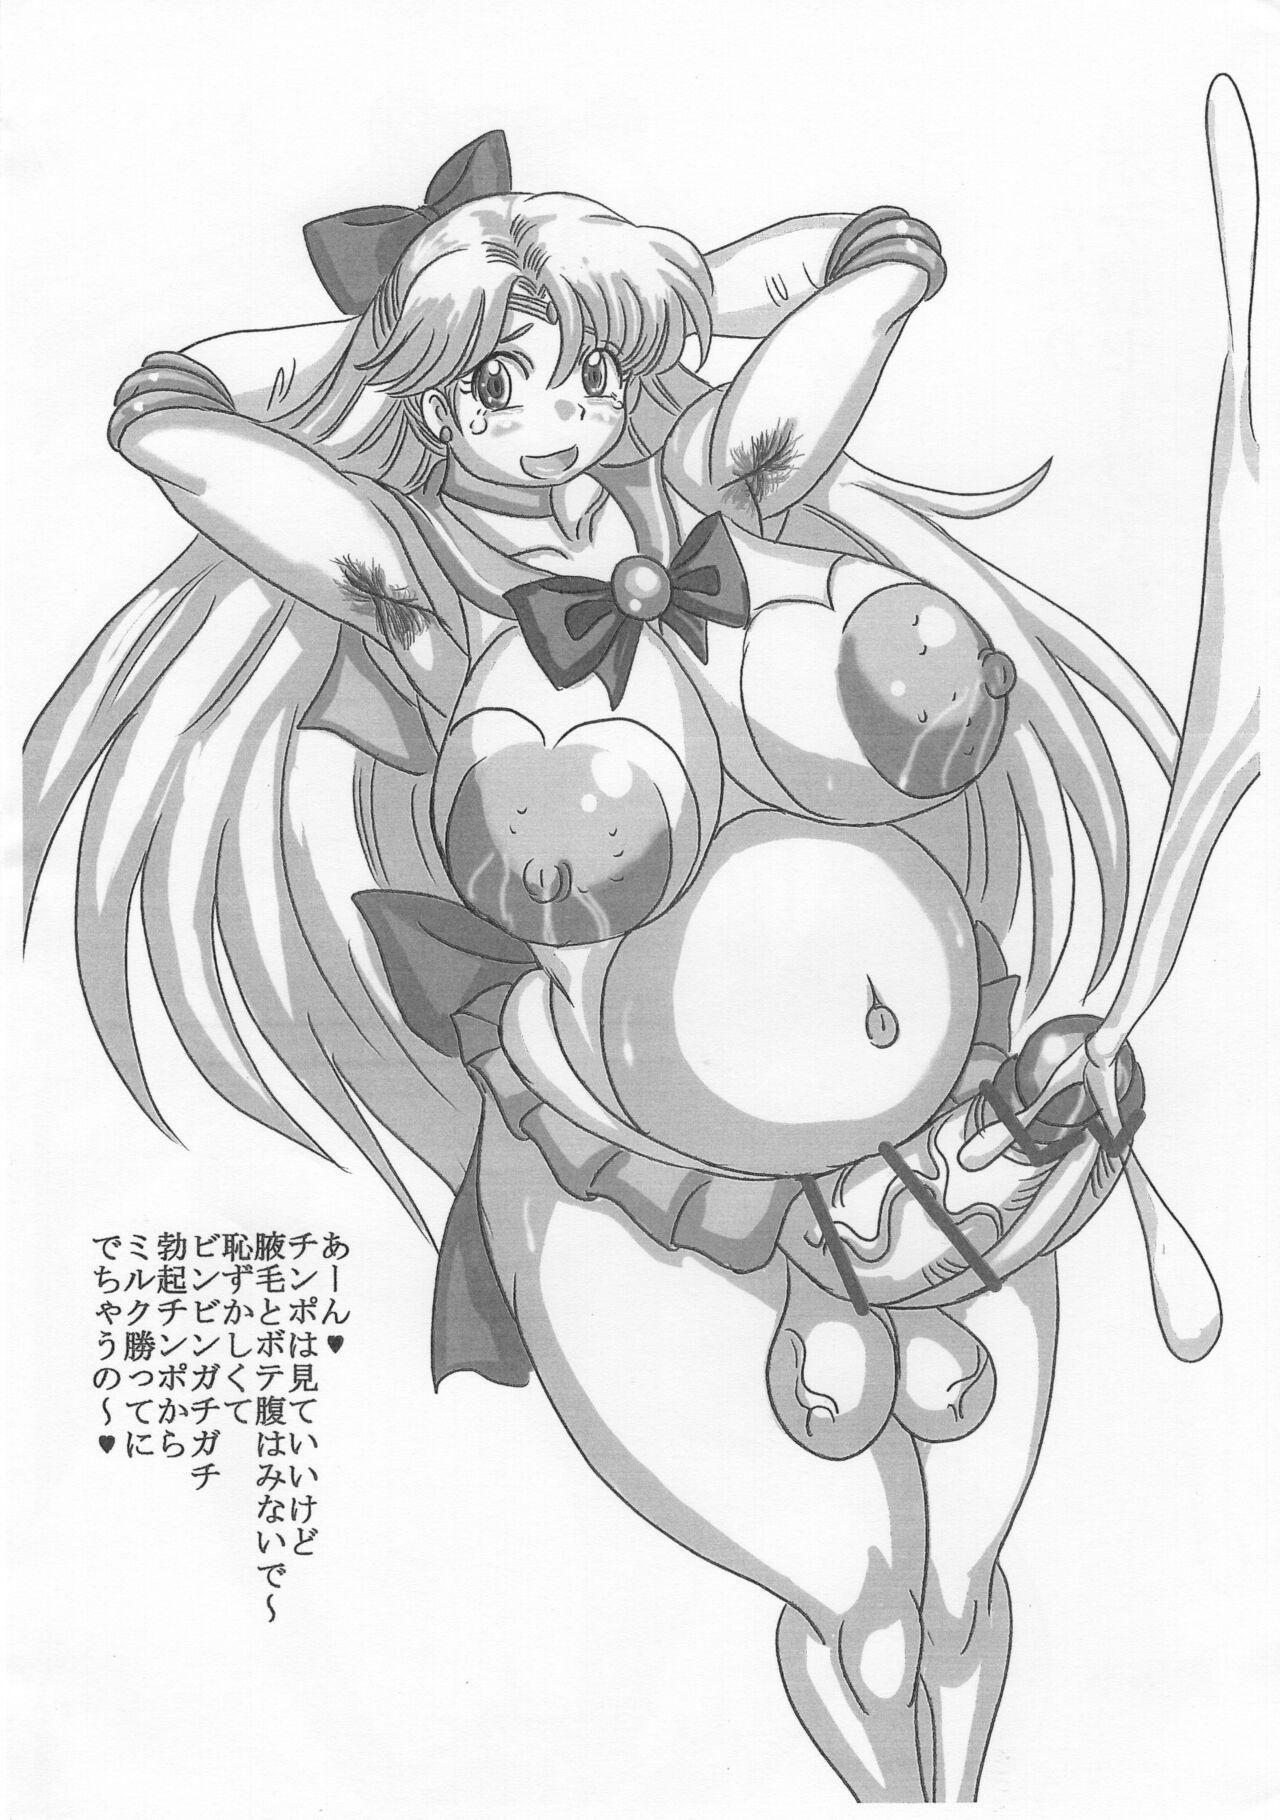 Perfect Body Porn ふたなりボテ腹セーラー戦士 - Sailor moon | bishoujo senshi sailor moon Sex Toys - Page 3